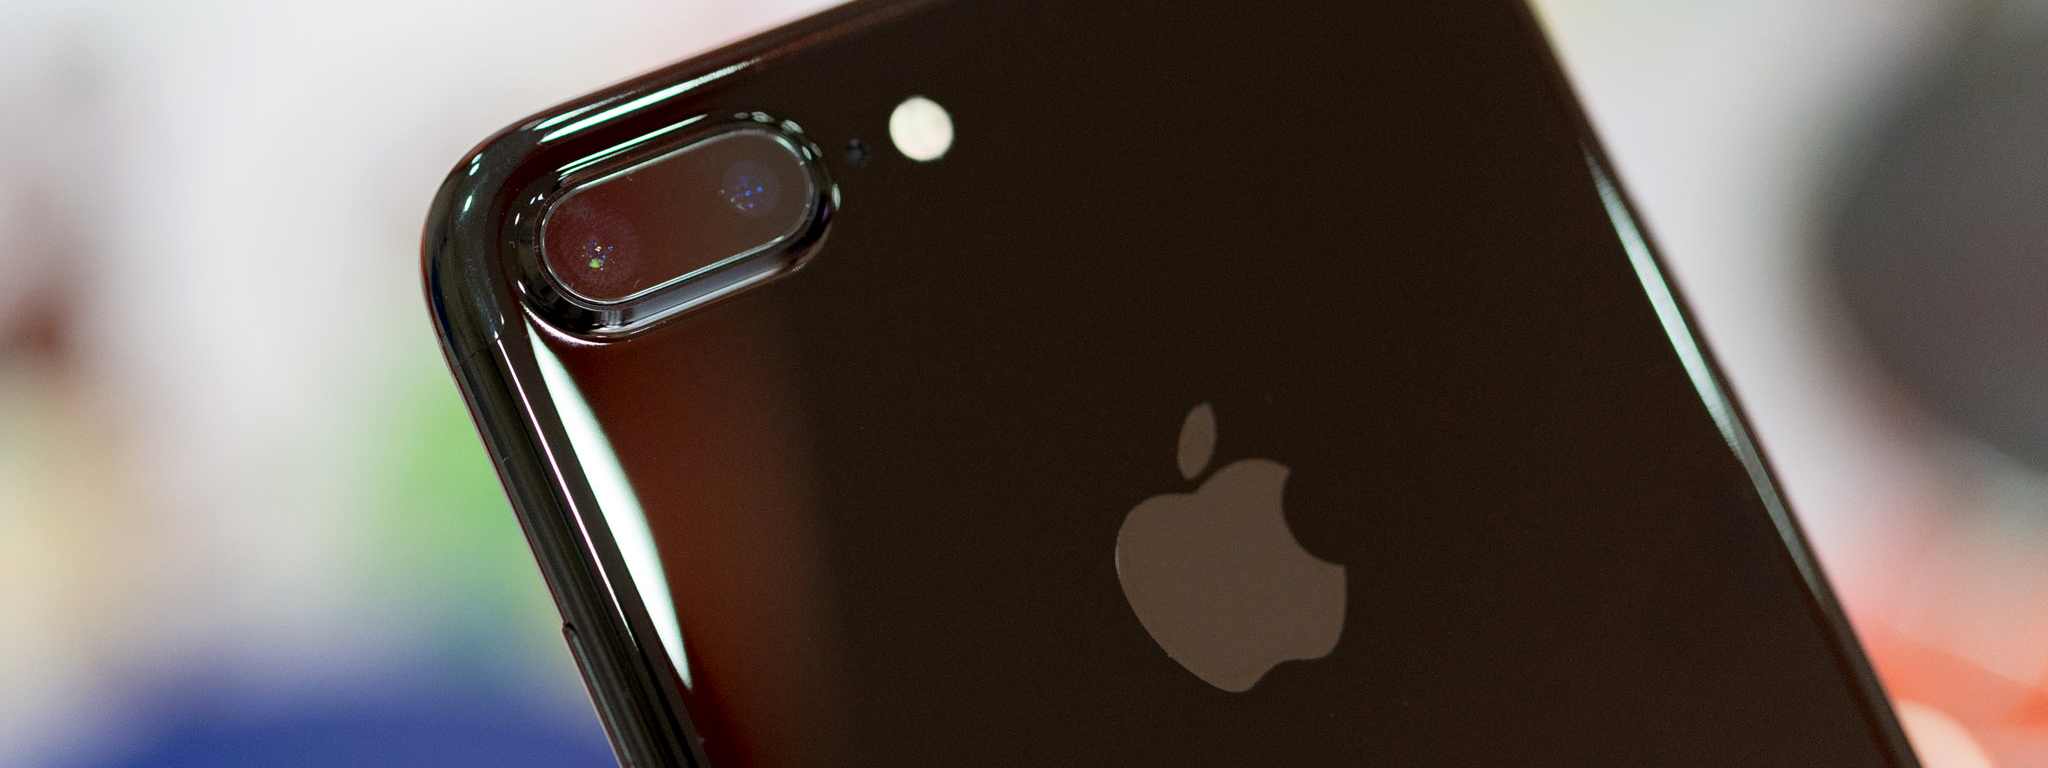 iPhone 7 màu Jet Black khan hiếm vì tỉ lệ lỗi khi sản xuất vỏ cao?